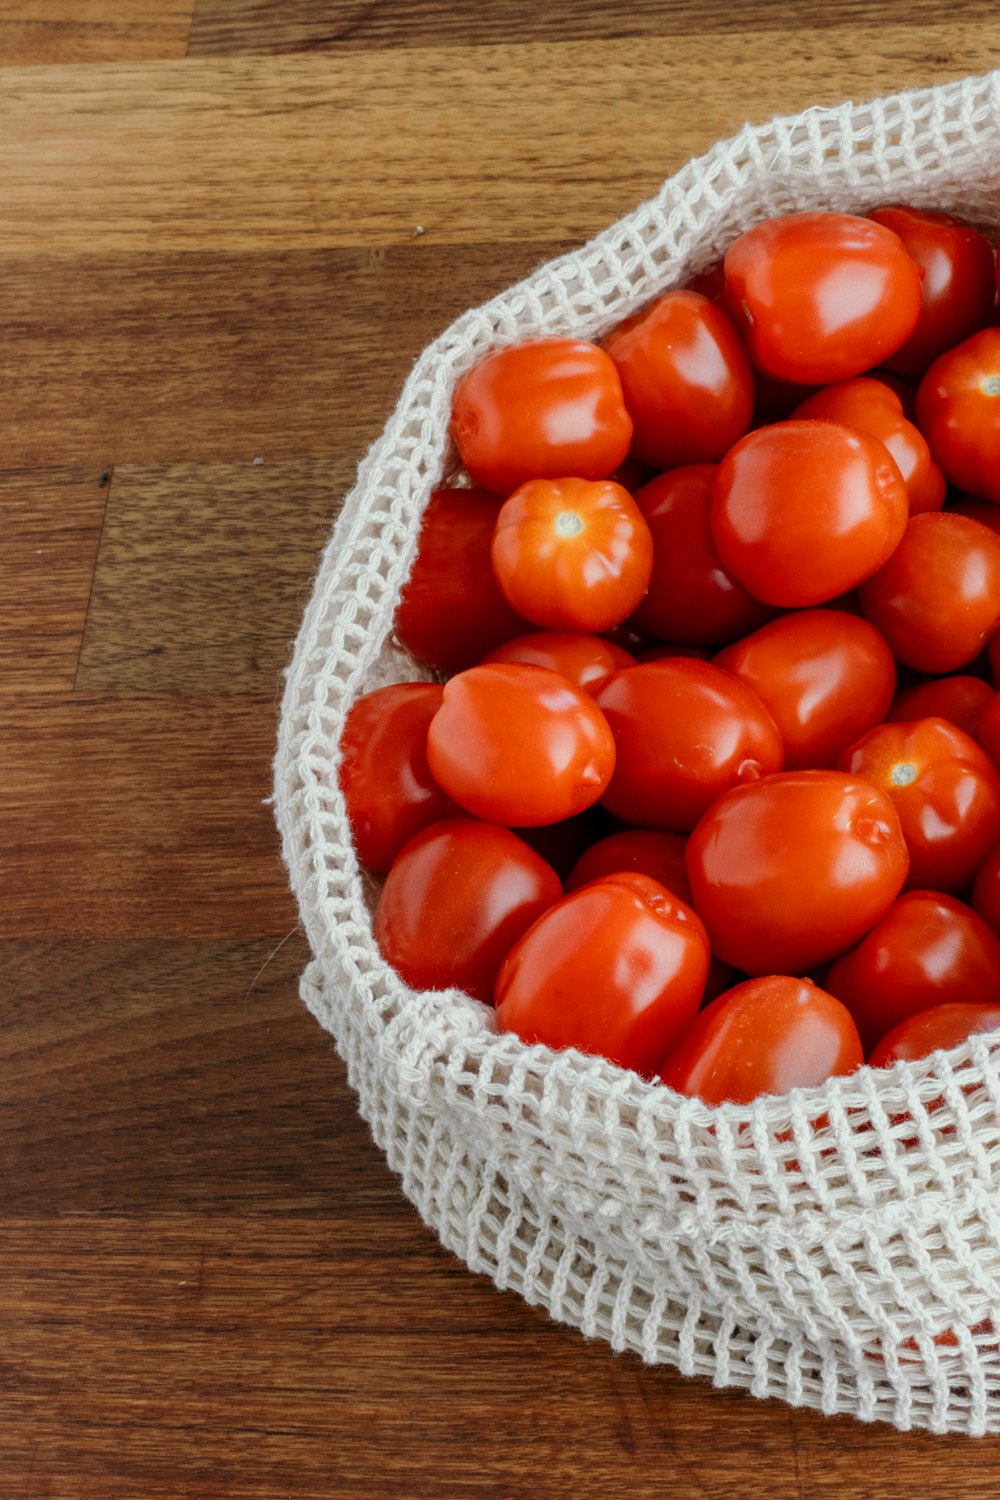 red tomato on white woven basket